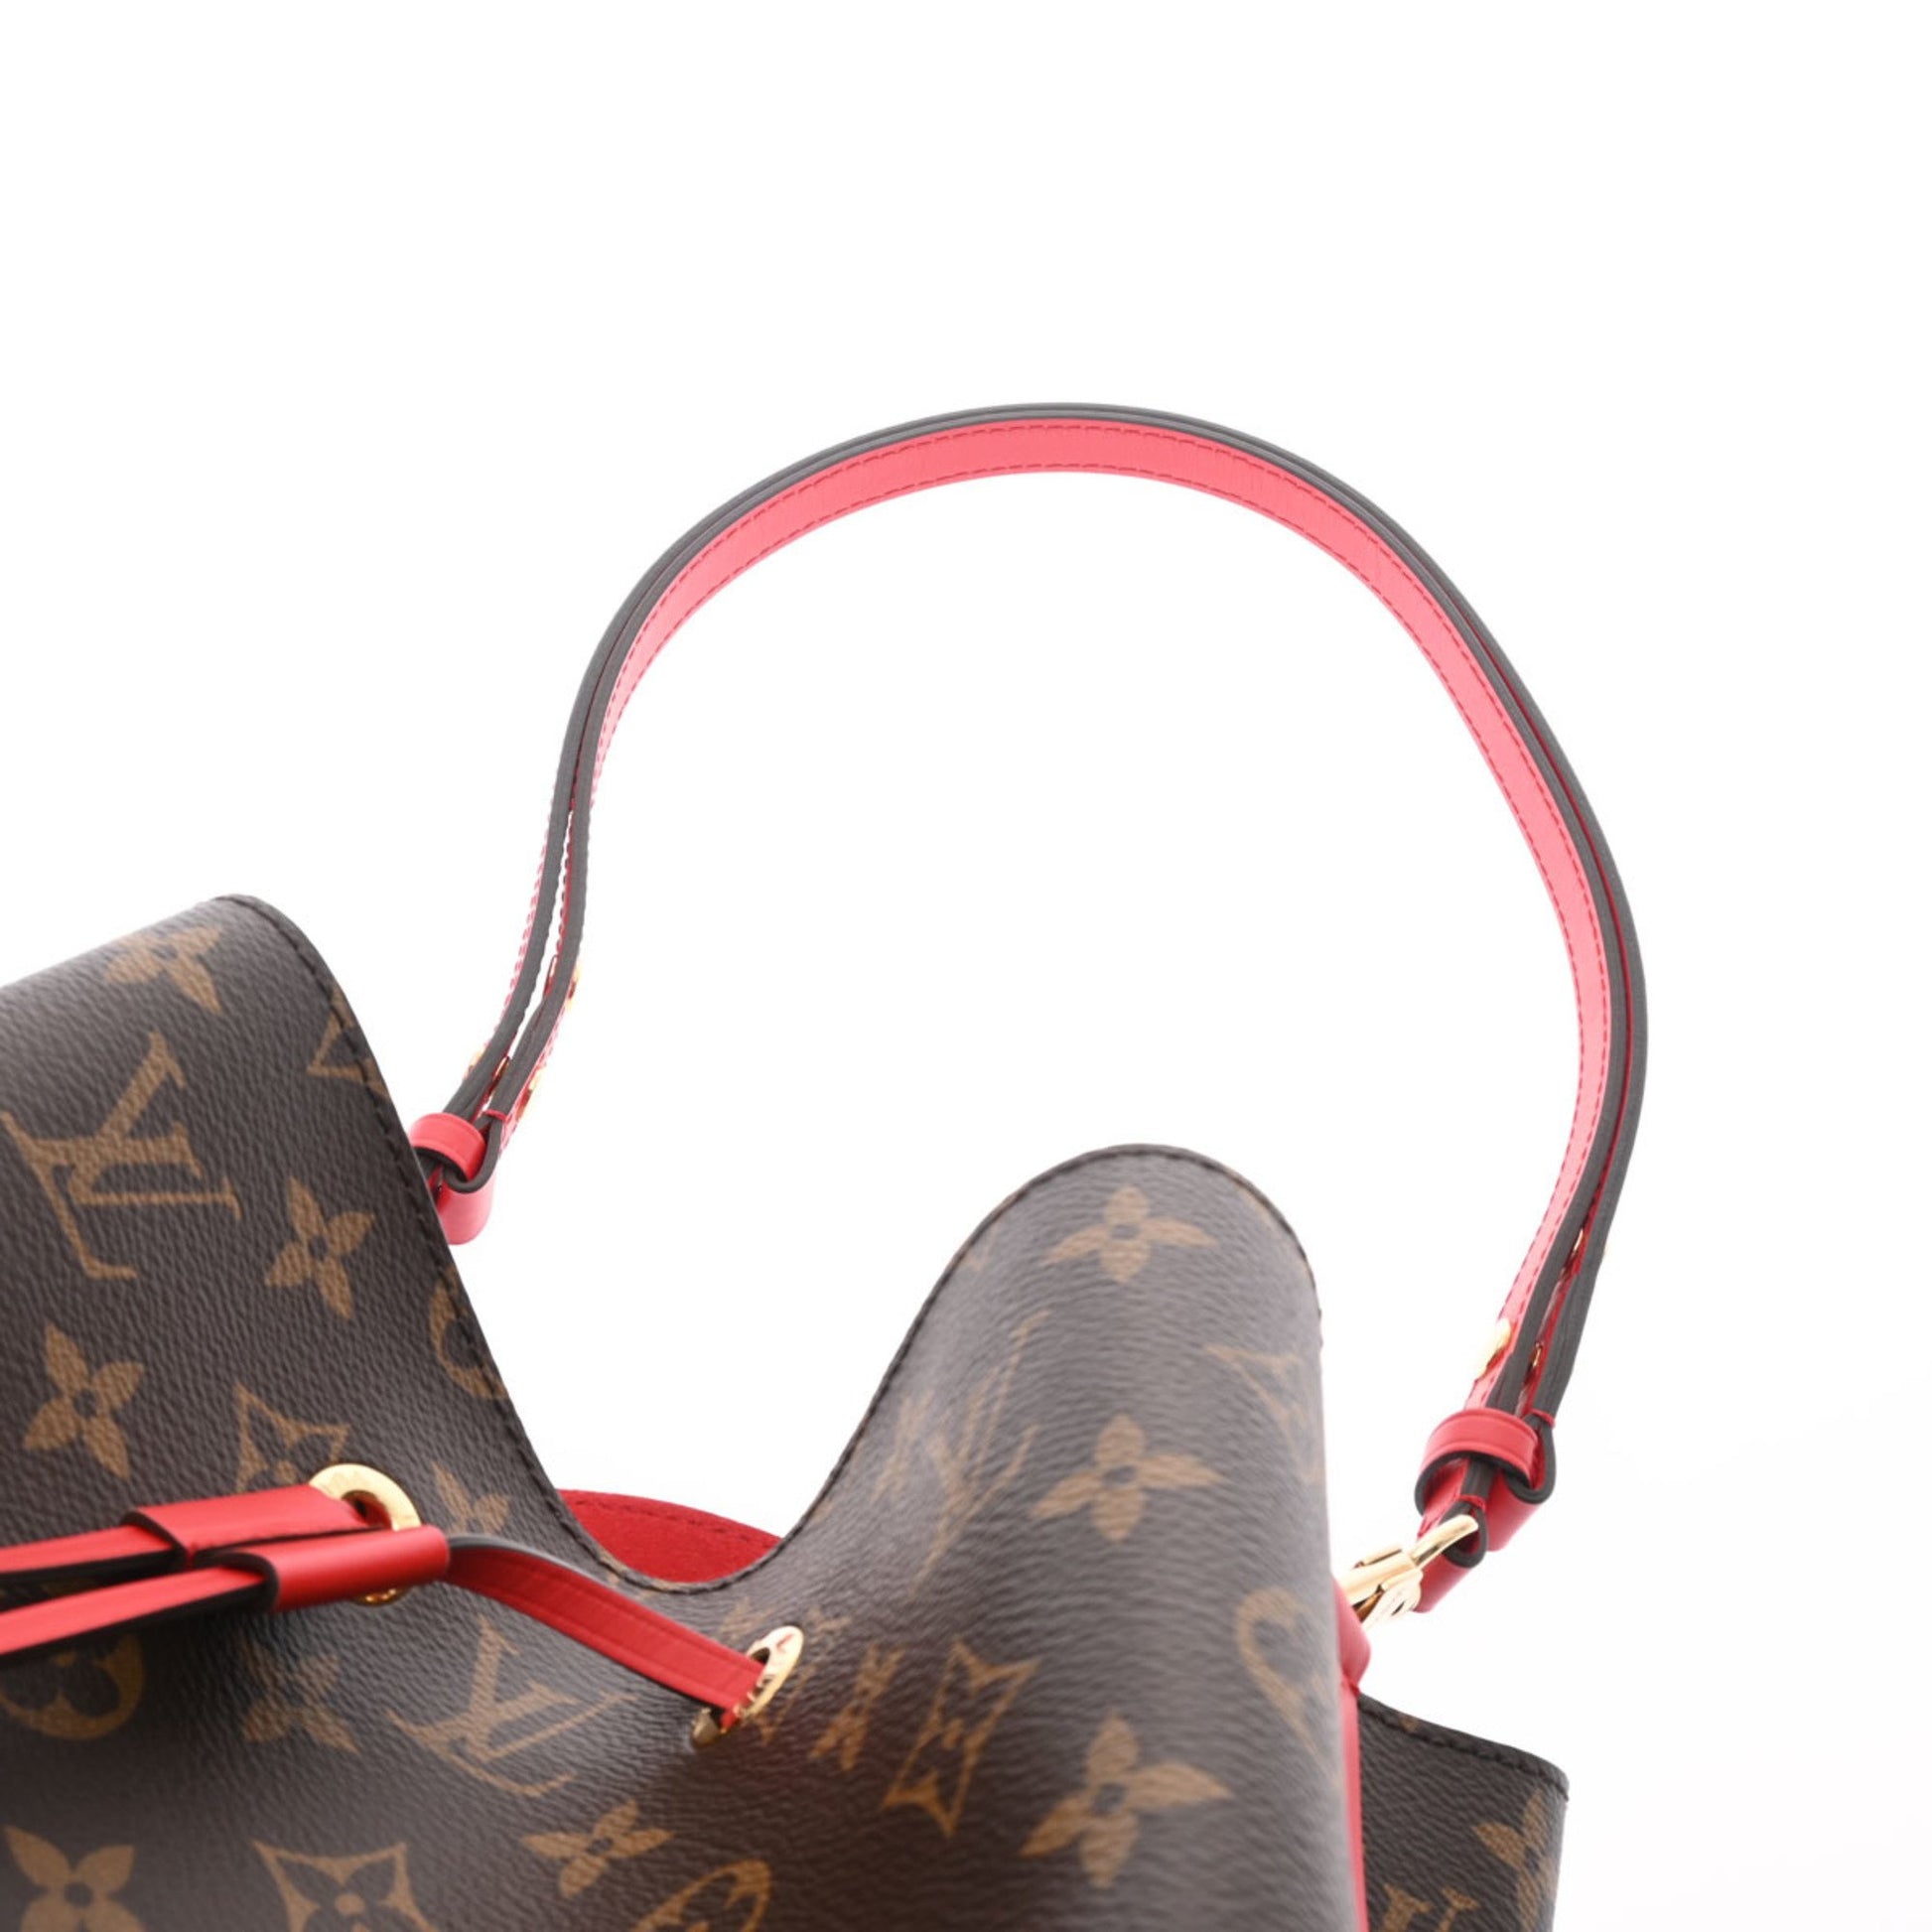 Louis Vuitton LOUIS VUITTON Neonoe Strap Shoulder Bag Monogram Canvas  Coquelicot M44021